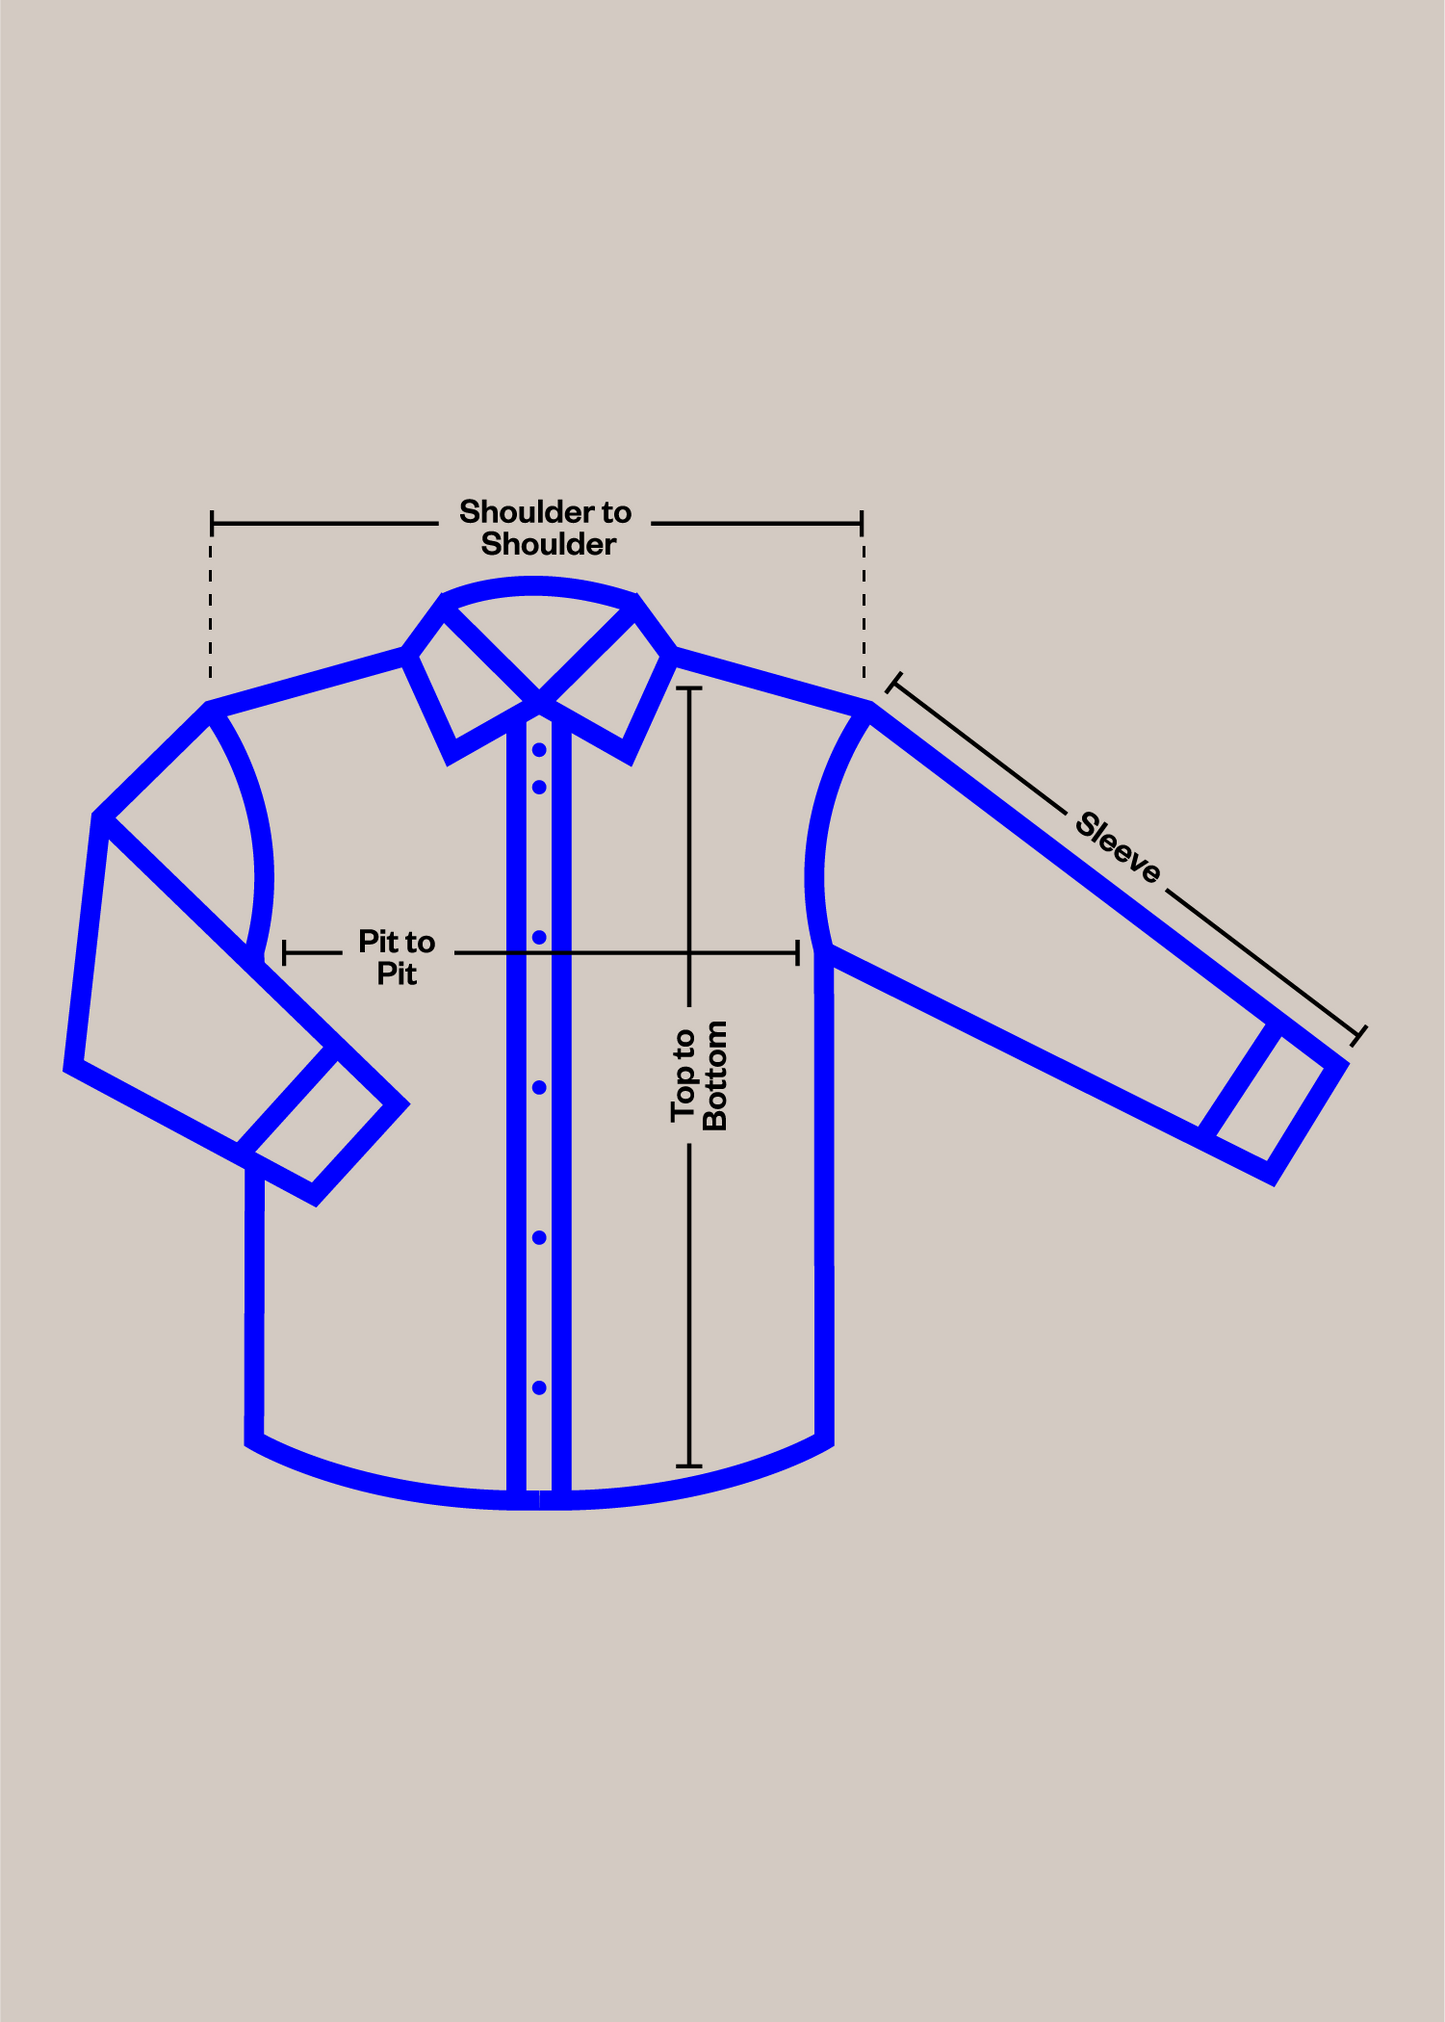 1990s Reversible Down Vest Size XS/S